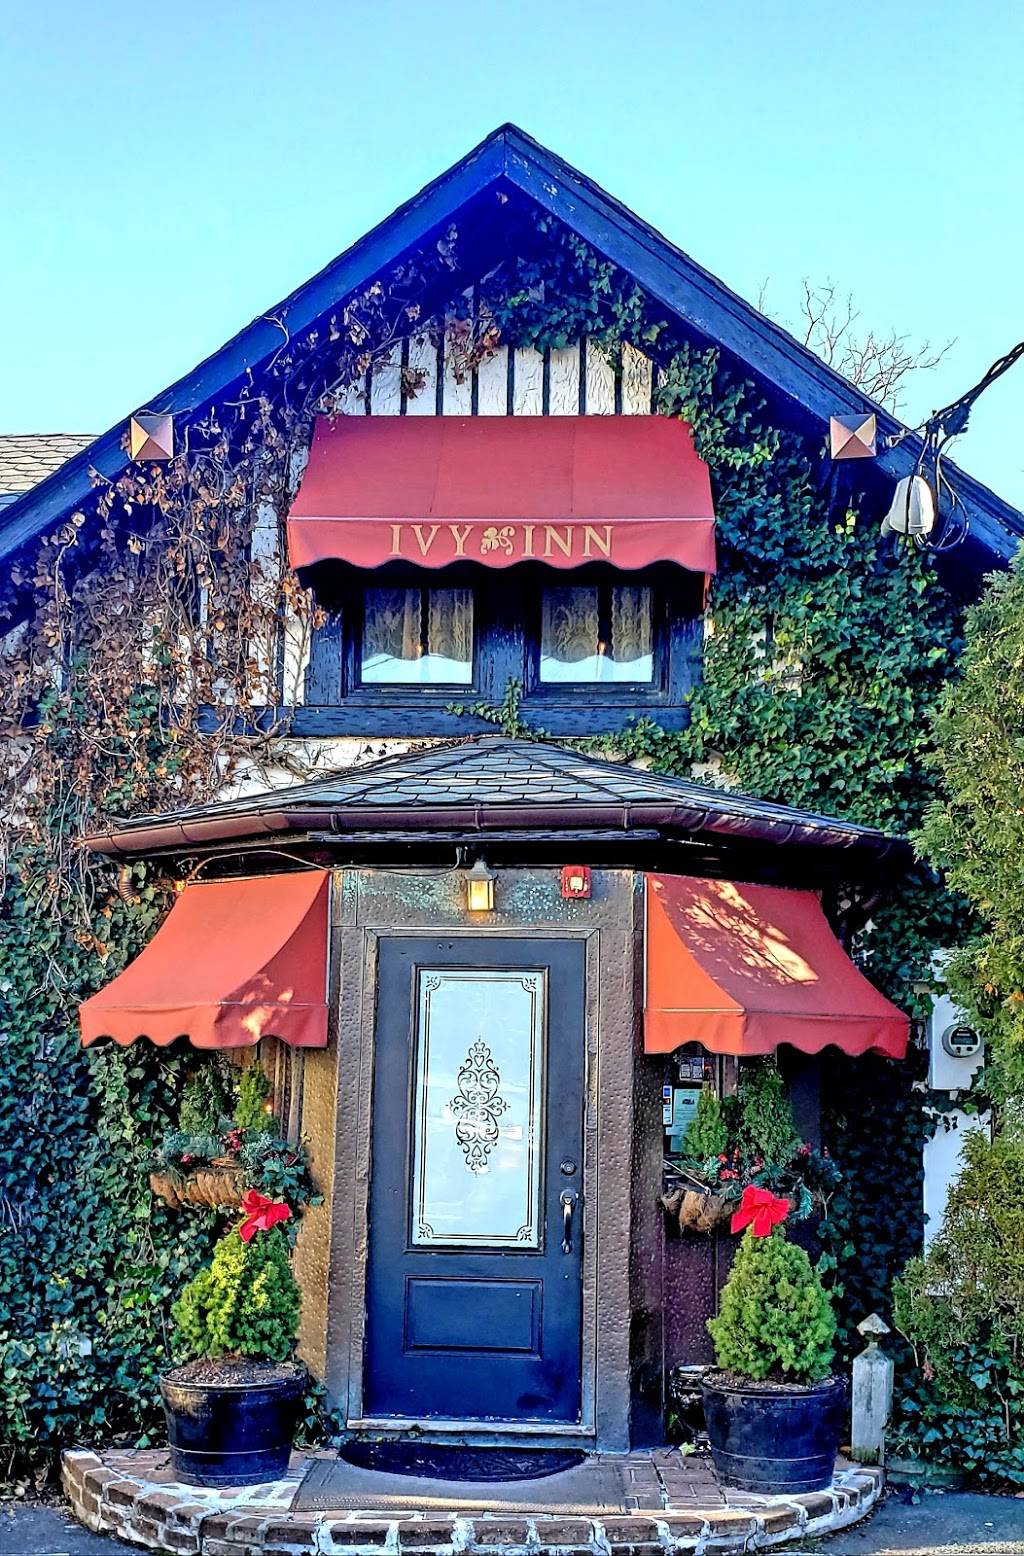 Ivy Inn | restaurant | 268 Terrace Ave, Hasbrouck Heights, NJ 07604, USA | 2013937699 OR +1 201-393-7699